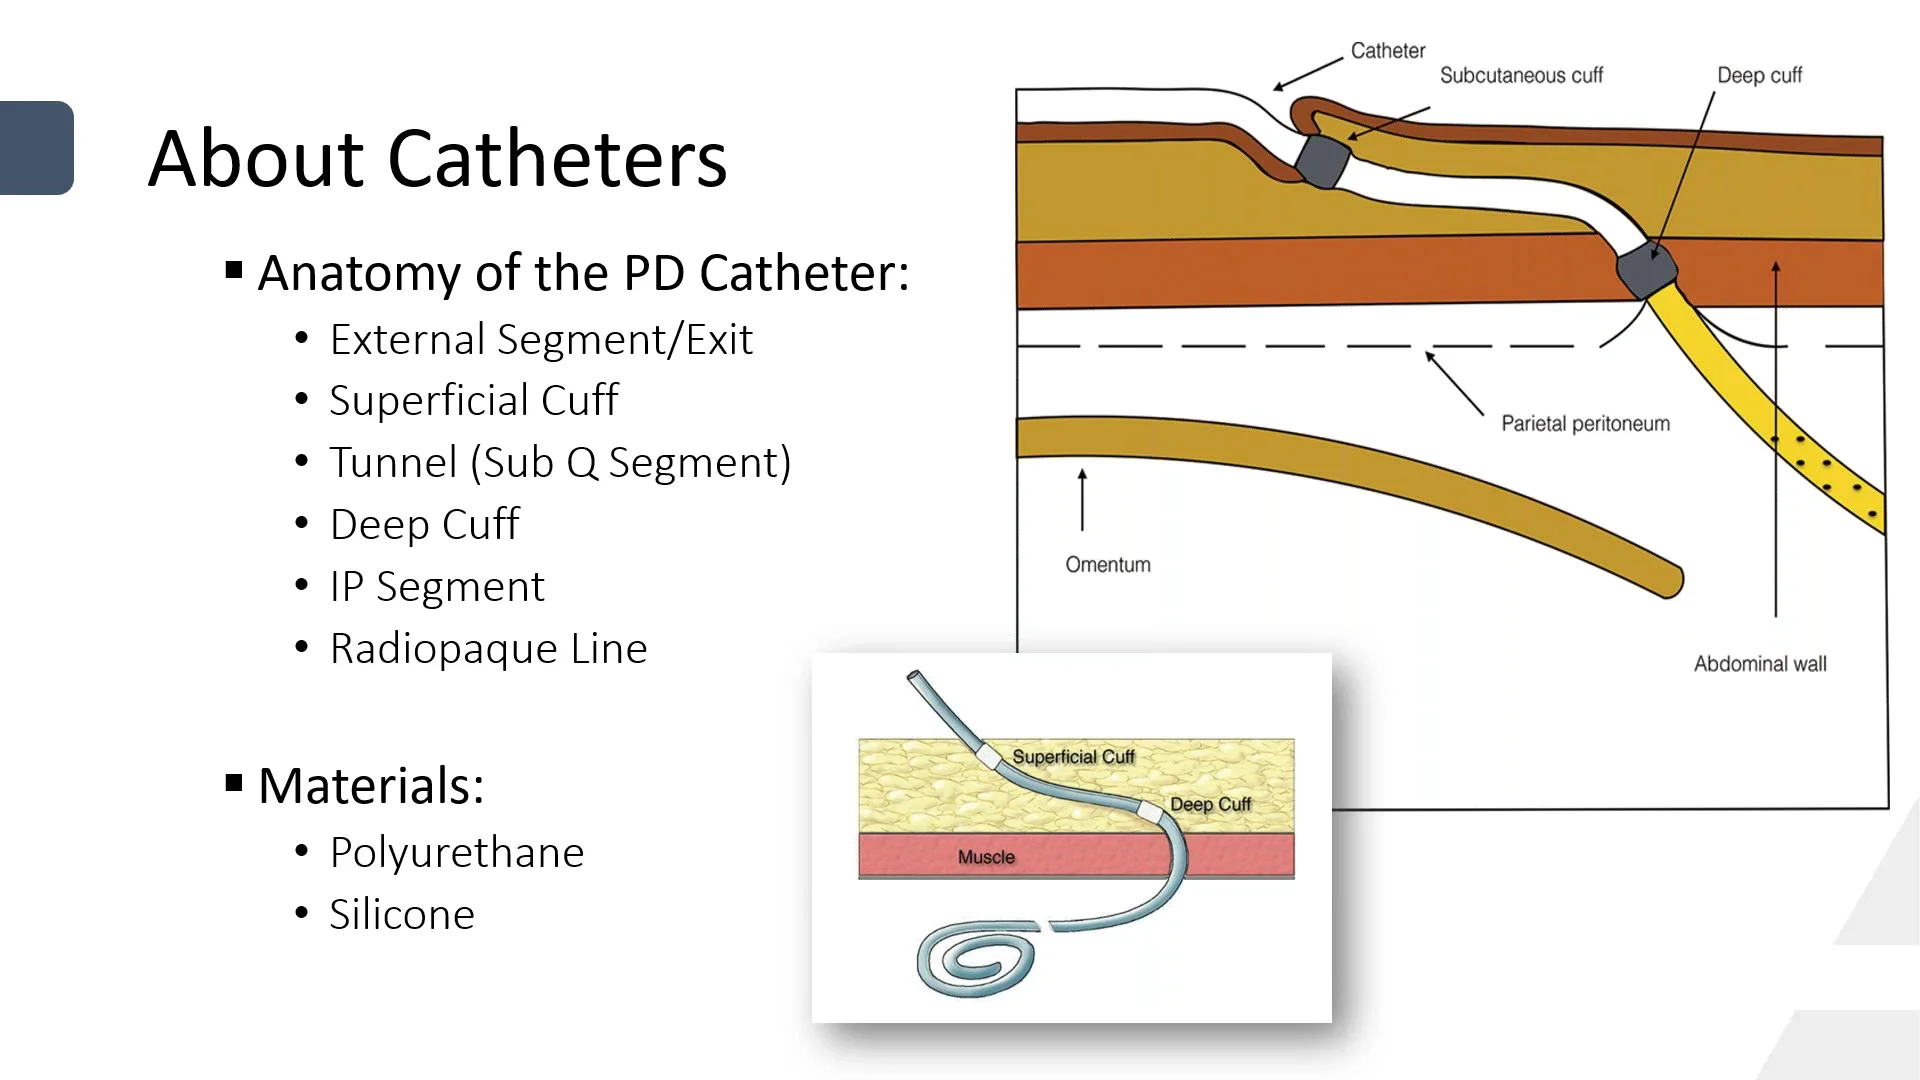 peritoneal dialysis catheter